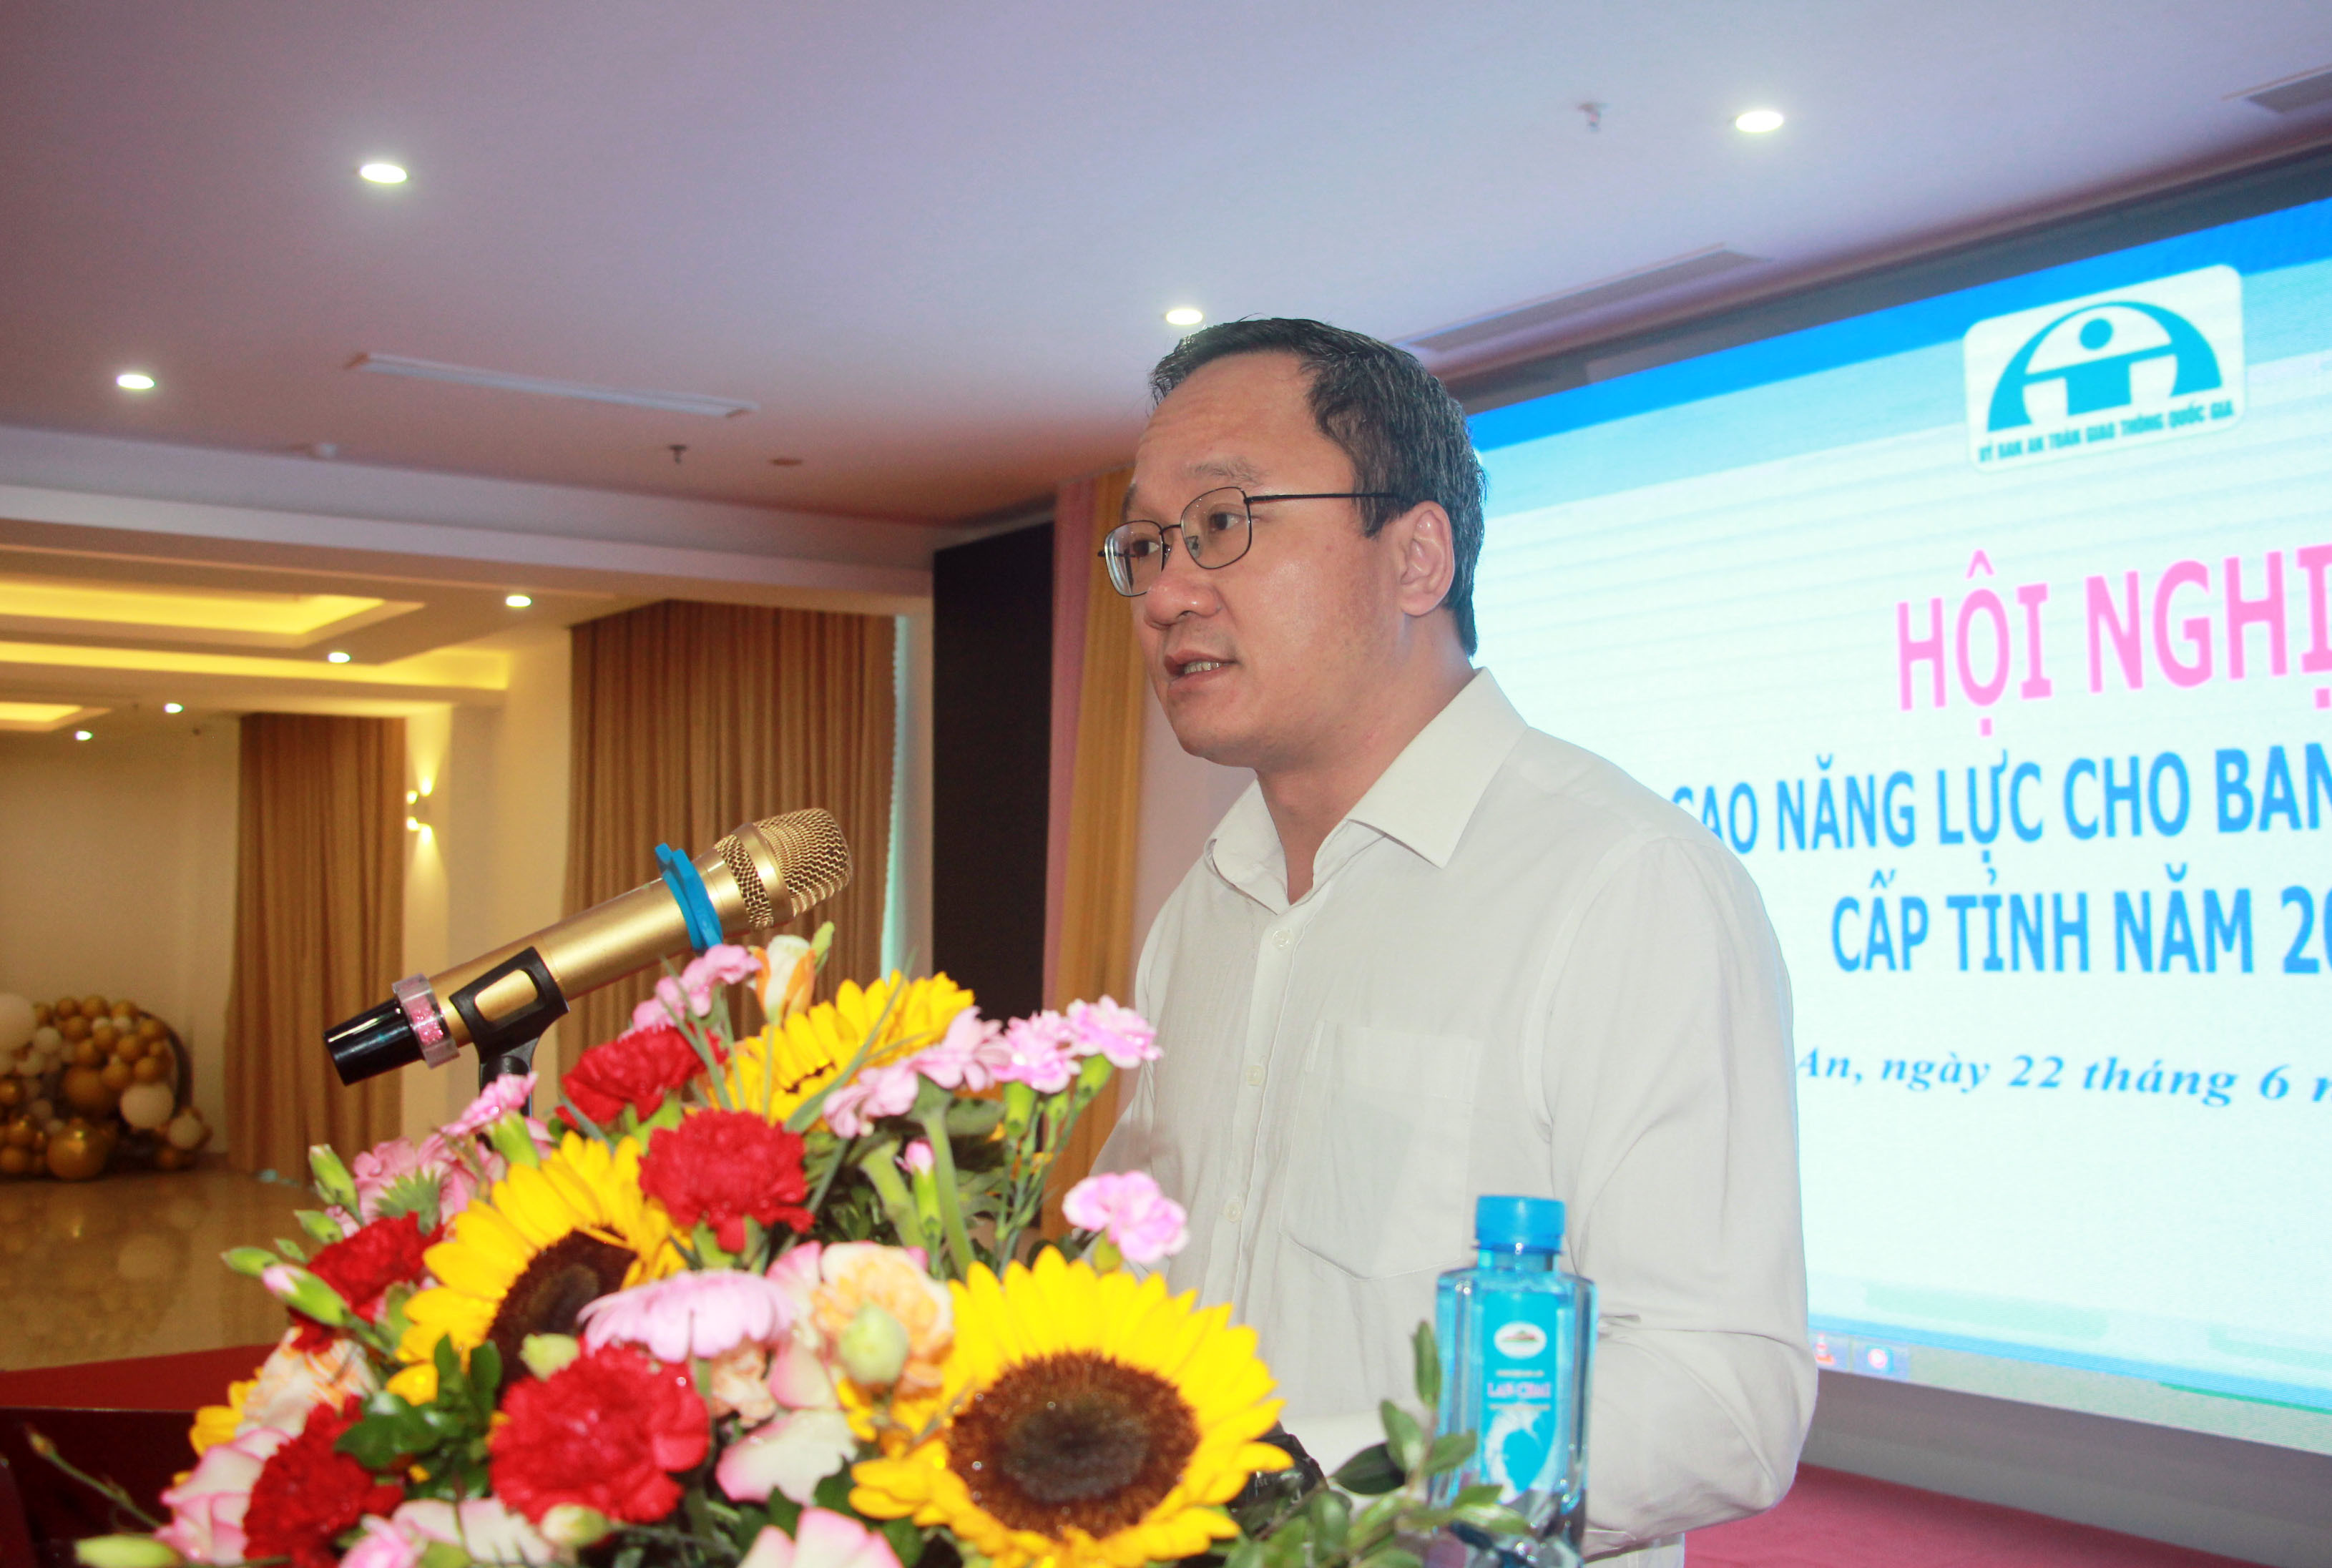 Đồng chí Khuất Việt Hùng, Phó Chủ tịch chuyên trách Ủy ban ATGT Quốc gia phát biểu tại hội nghị. Ảnh: An Quỳnh.